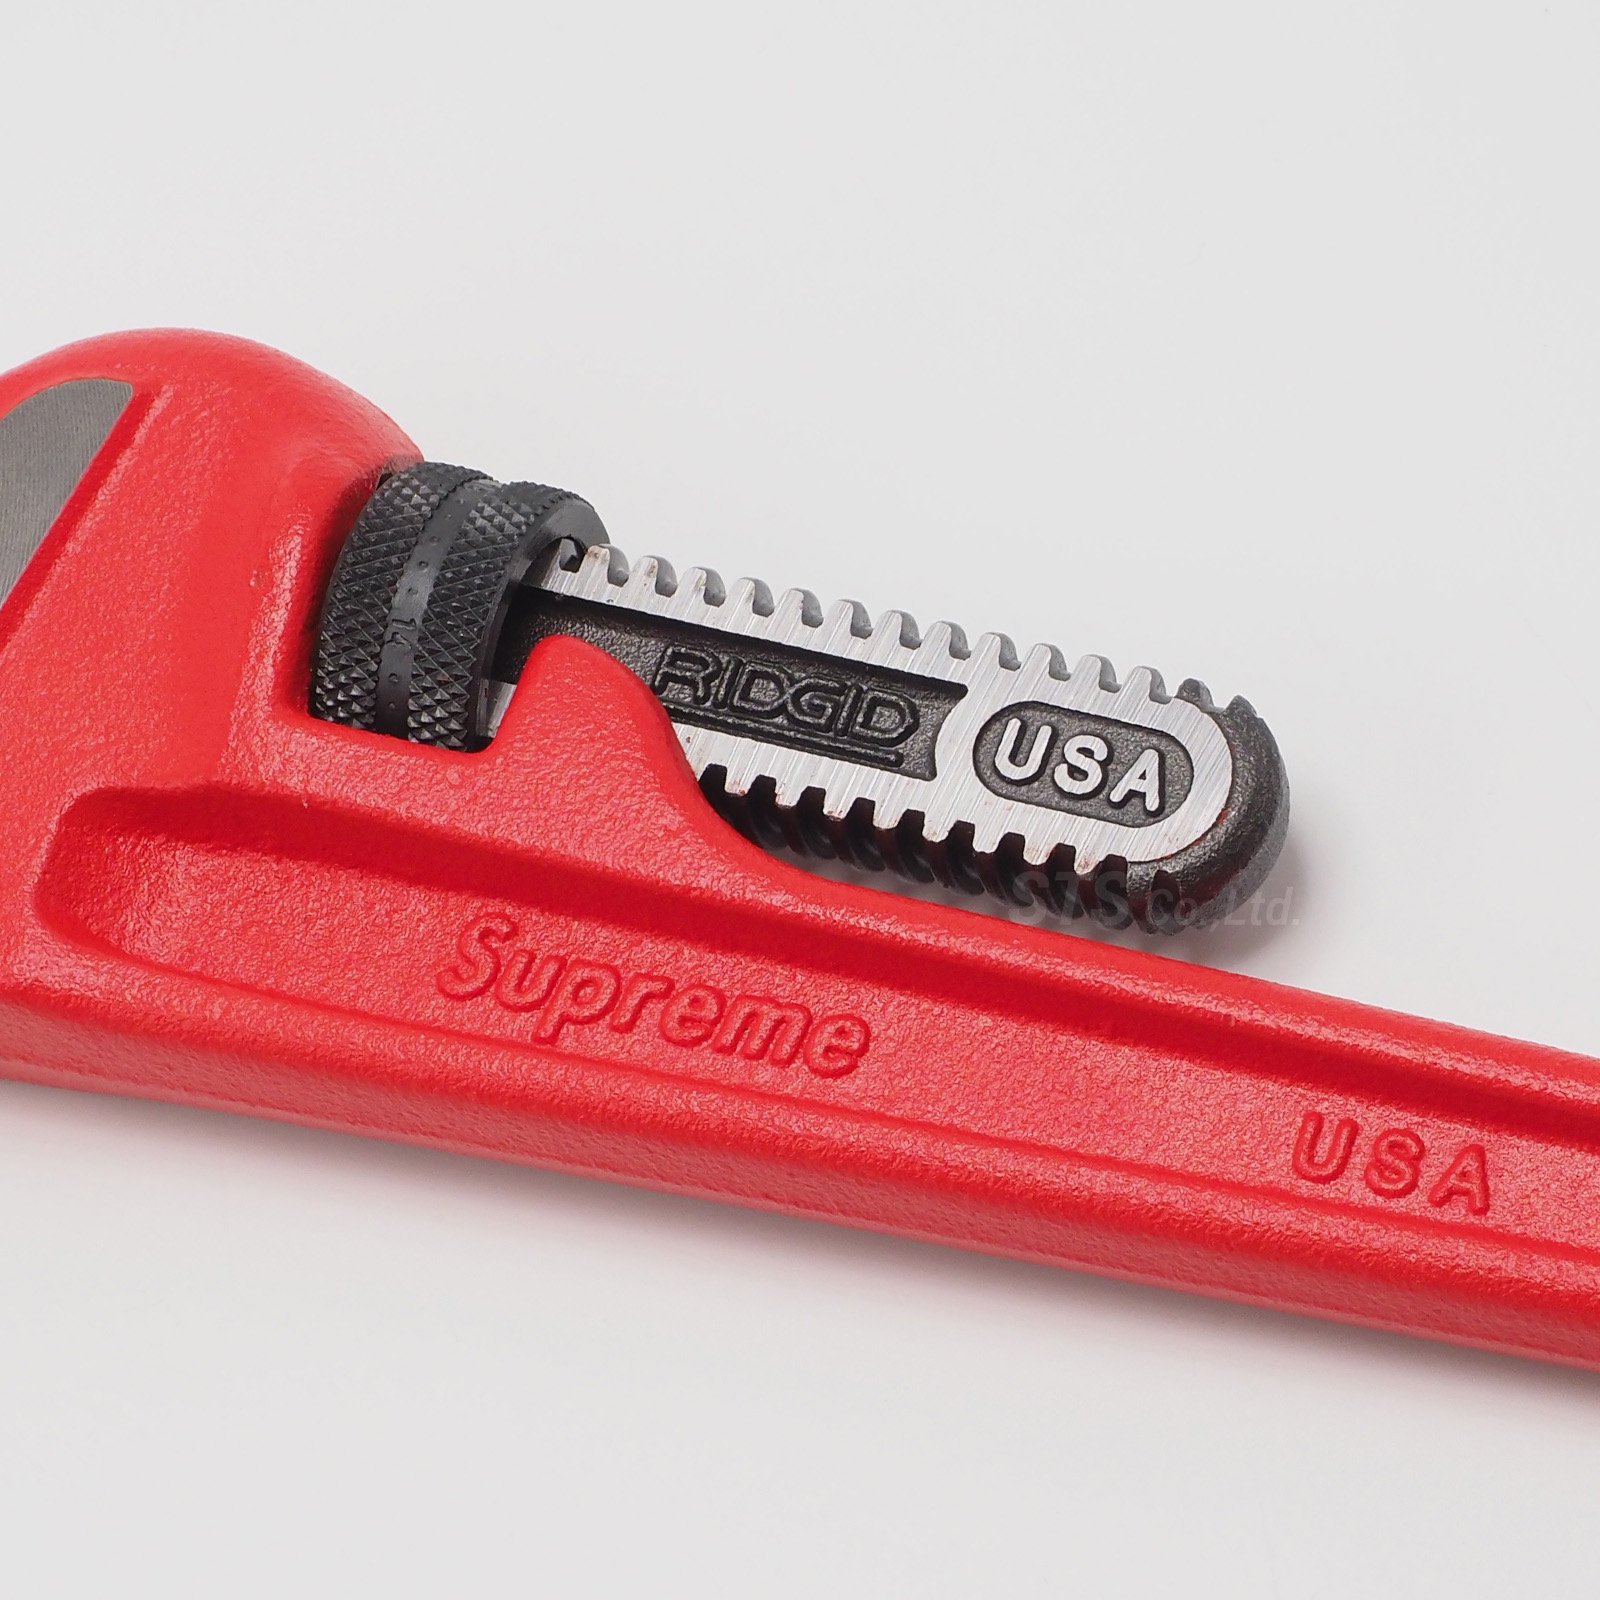 Supreme/Ridgid Pipe Wrench - UG.SHAFT